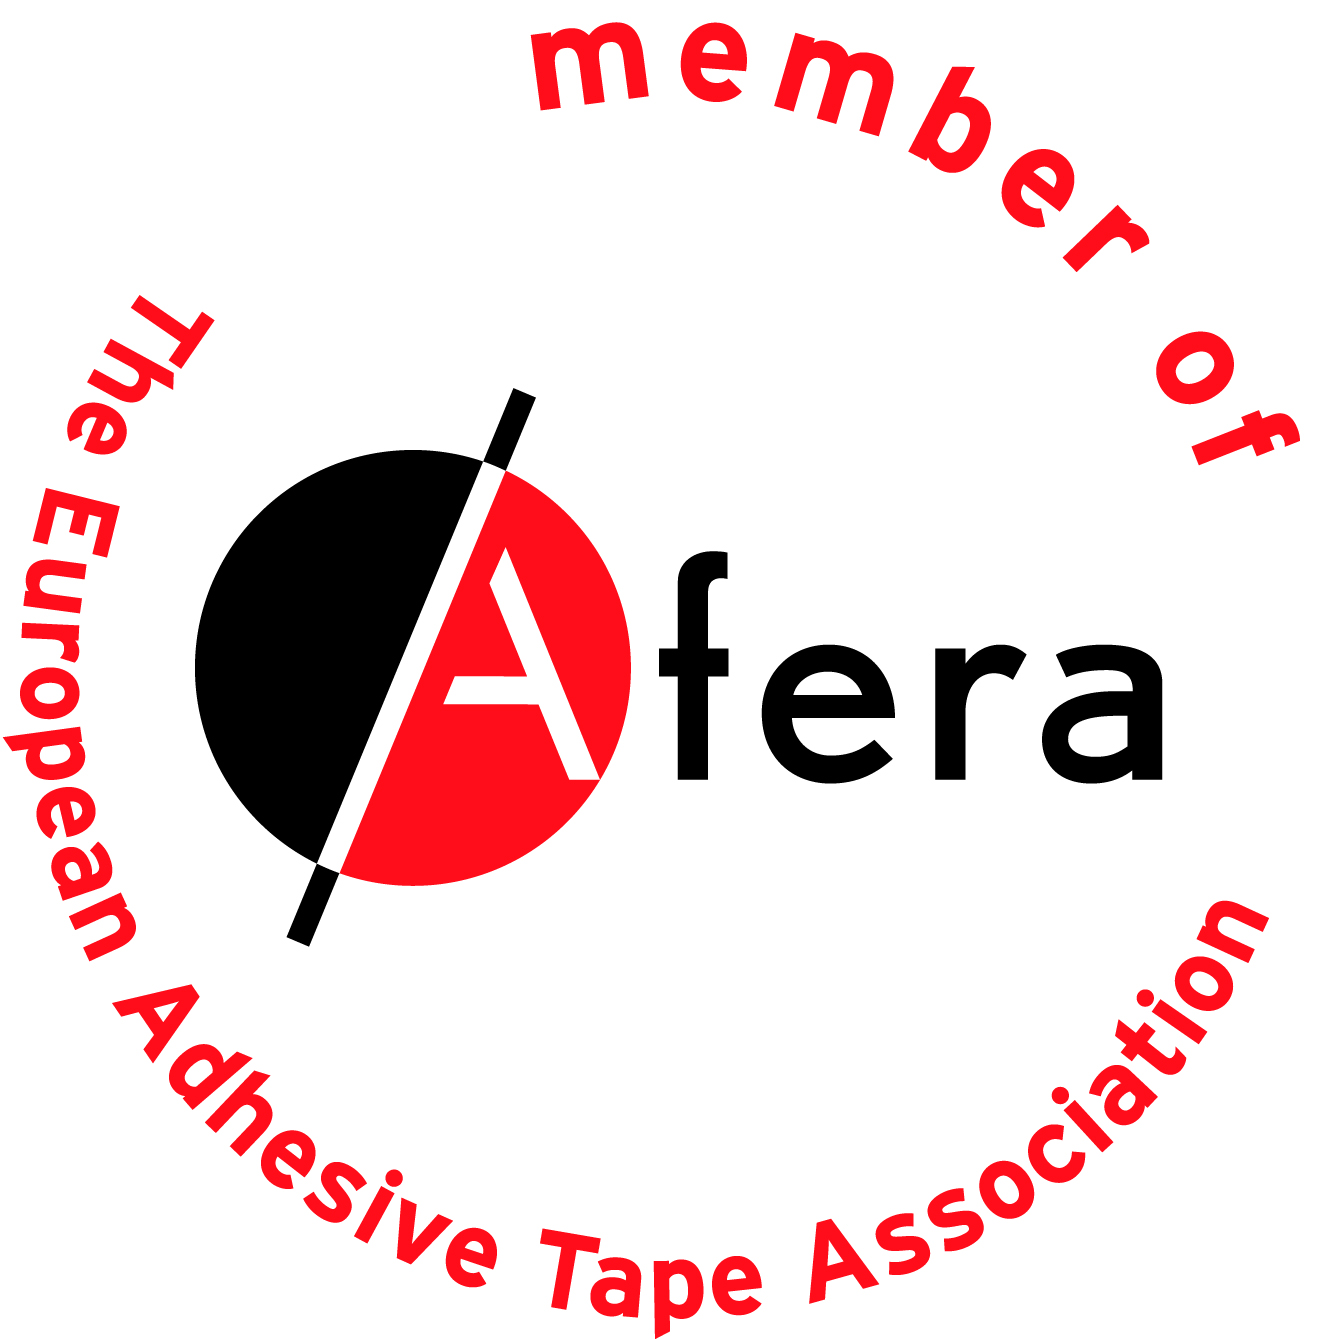 Member of Afera logo